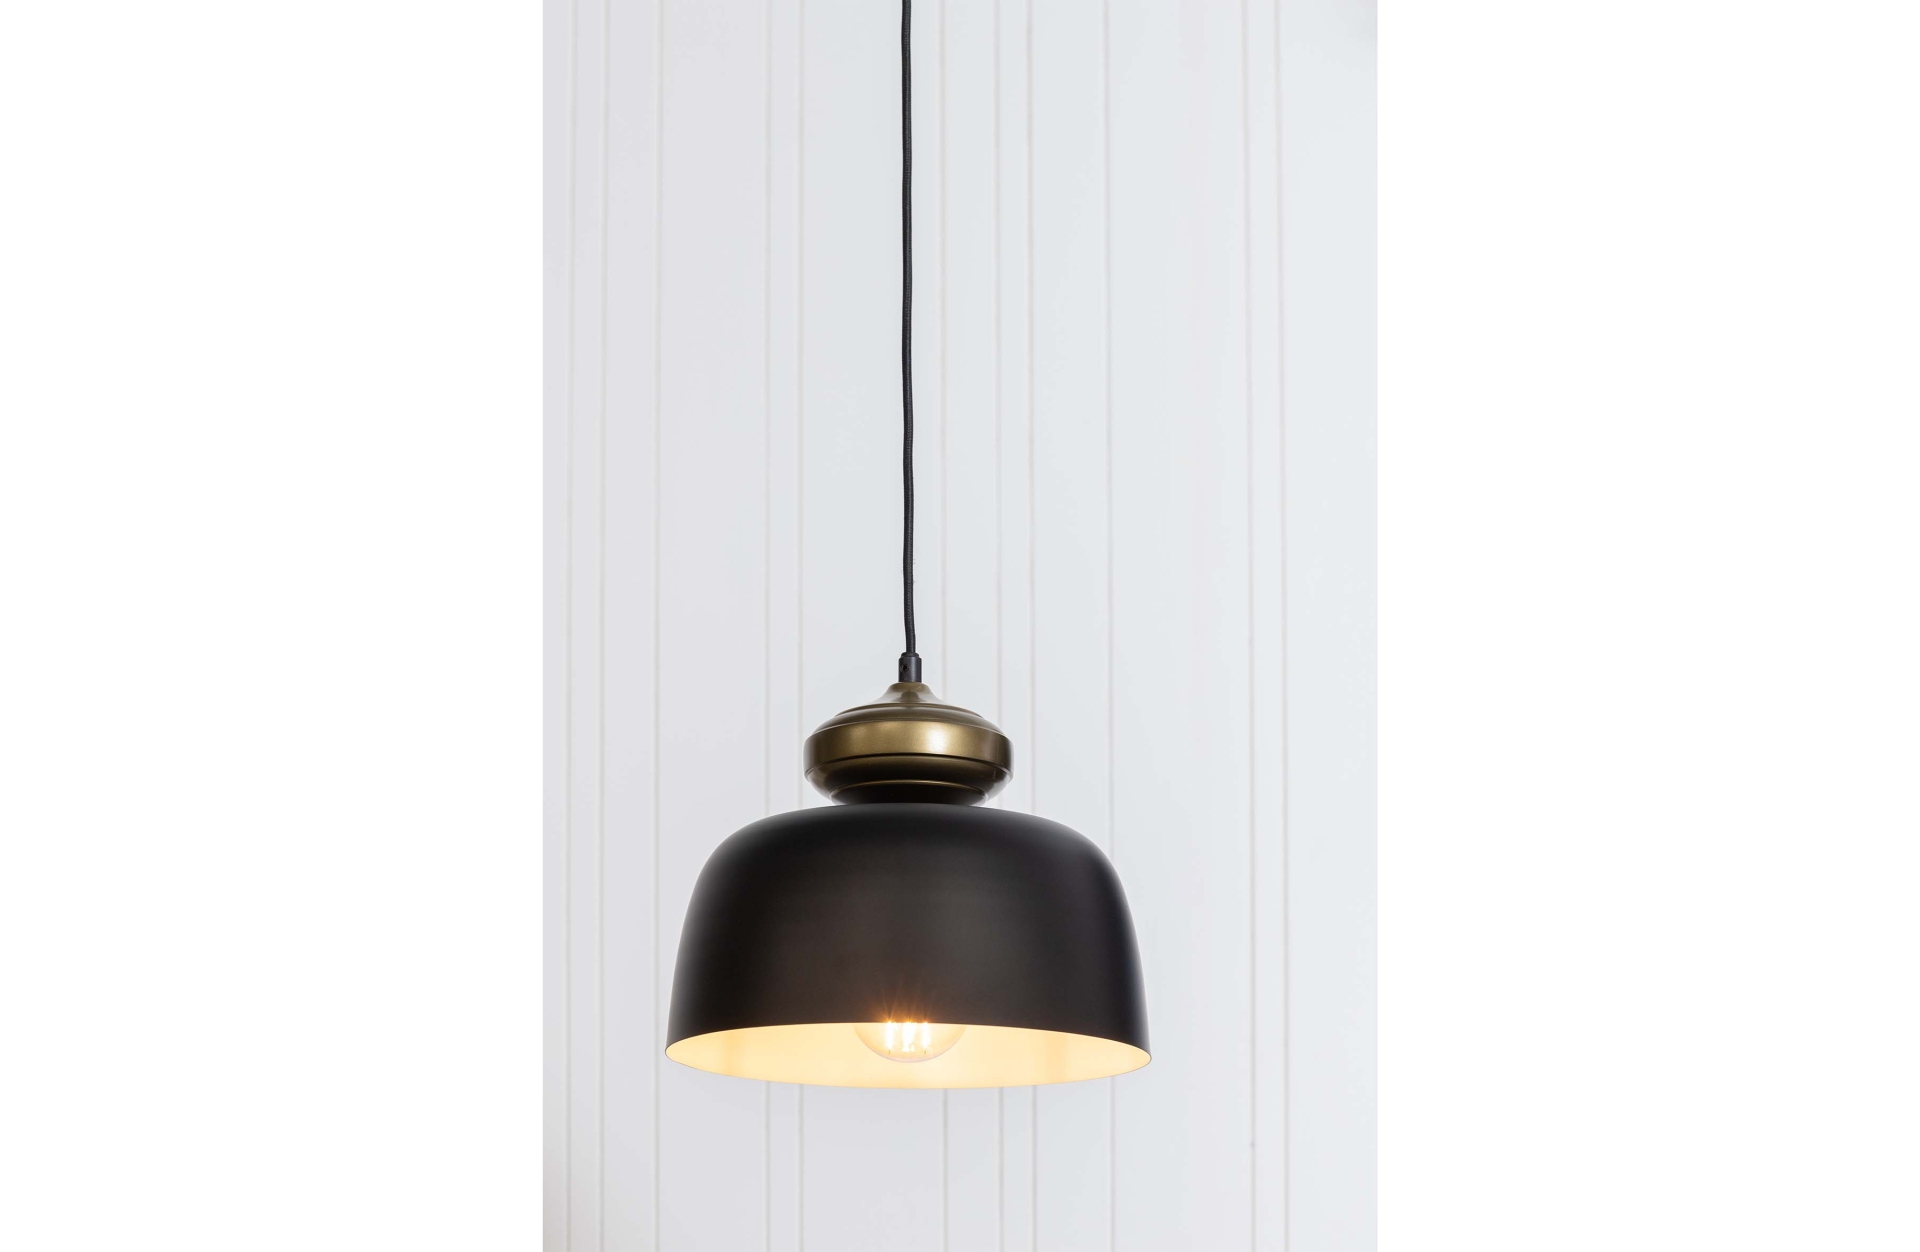 Die schlichte Hängelampe Linne überzuegt mit ihrem modernen Design. Gefertigt wurde die Lampe aus Metall, welches eine schwarze Farbe besitzt.